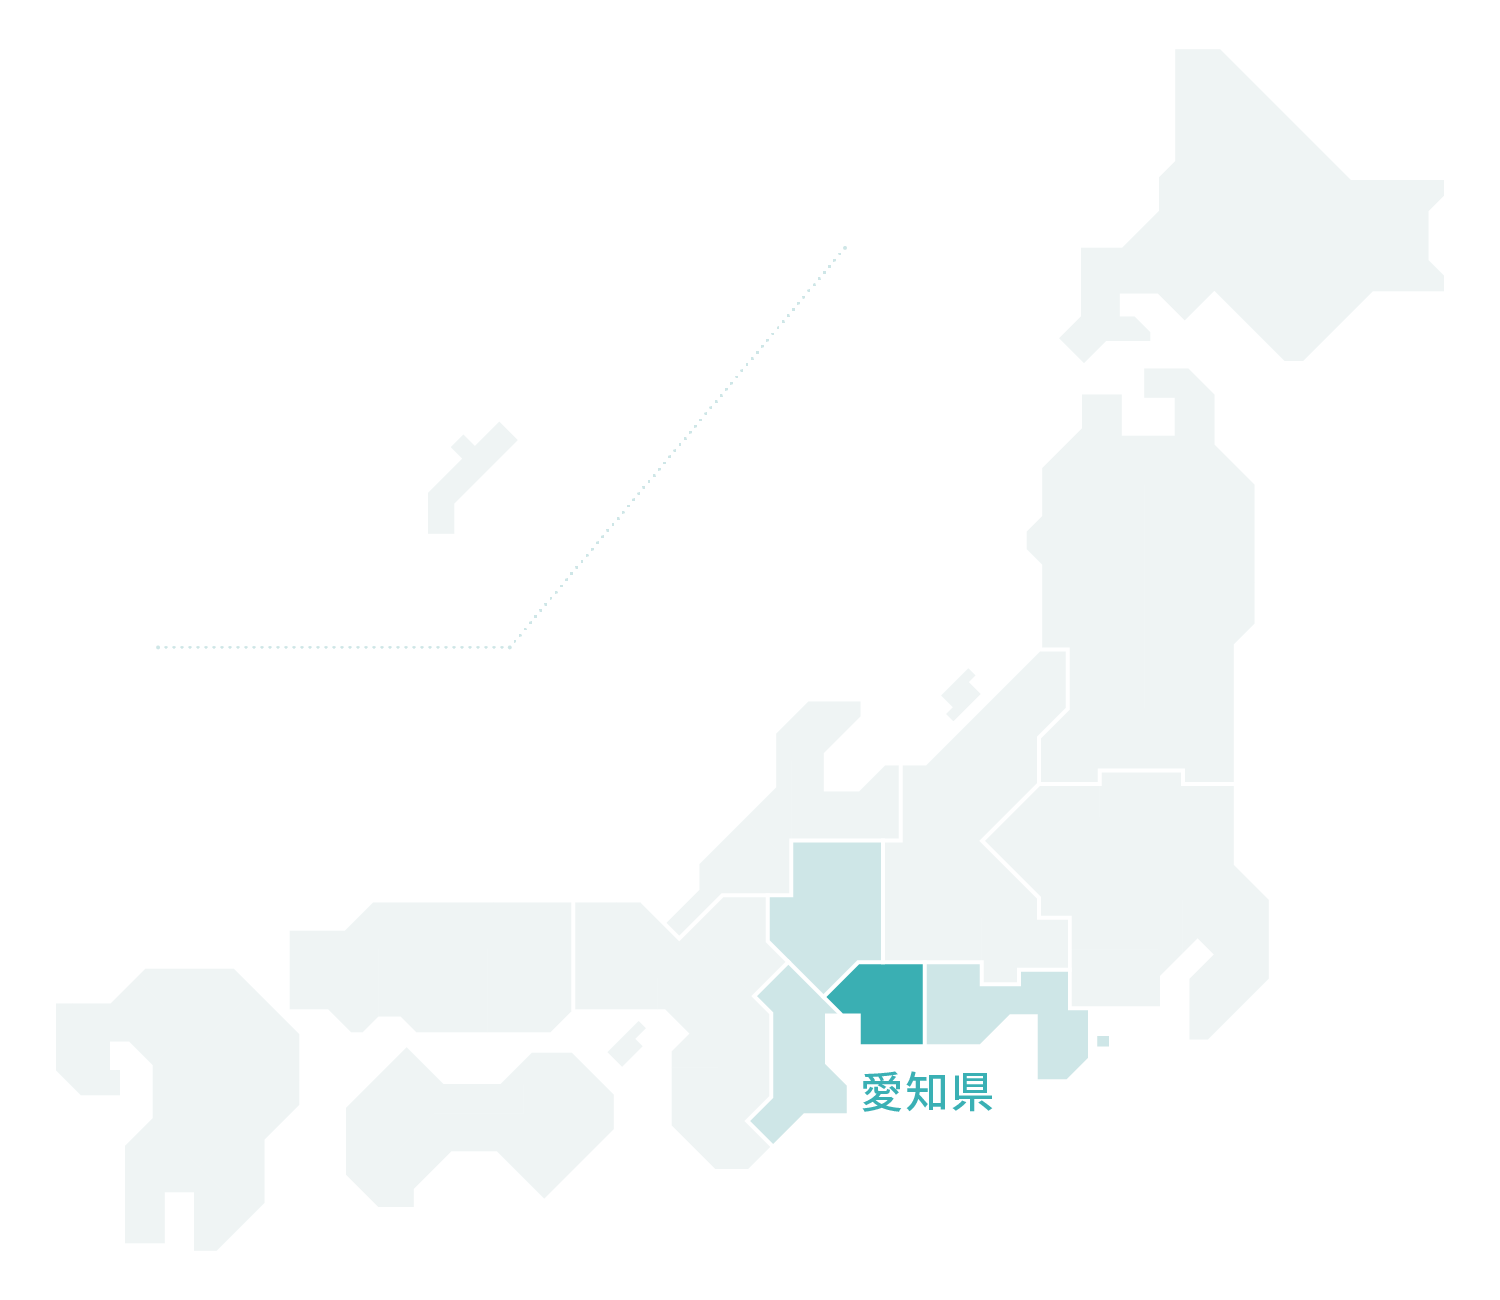 愛知県マップ